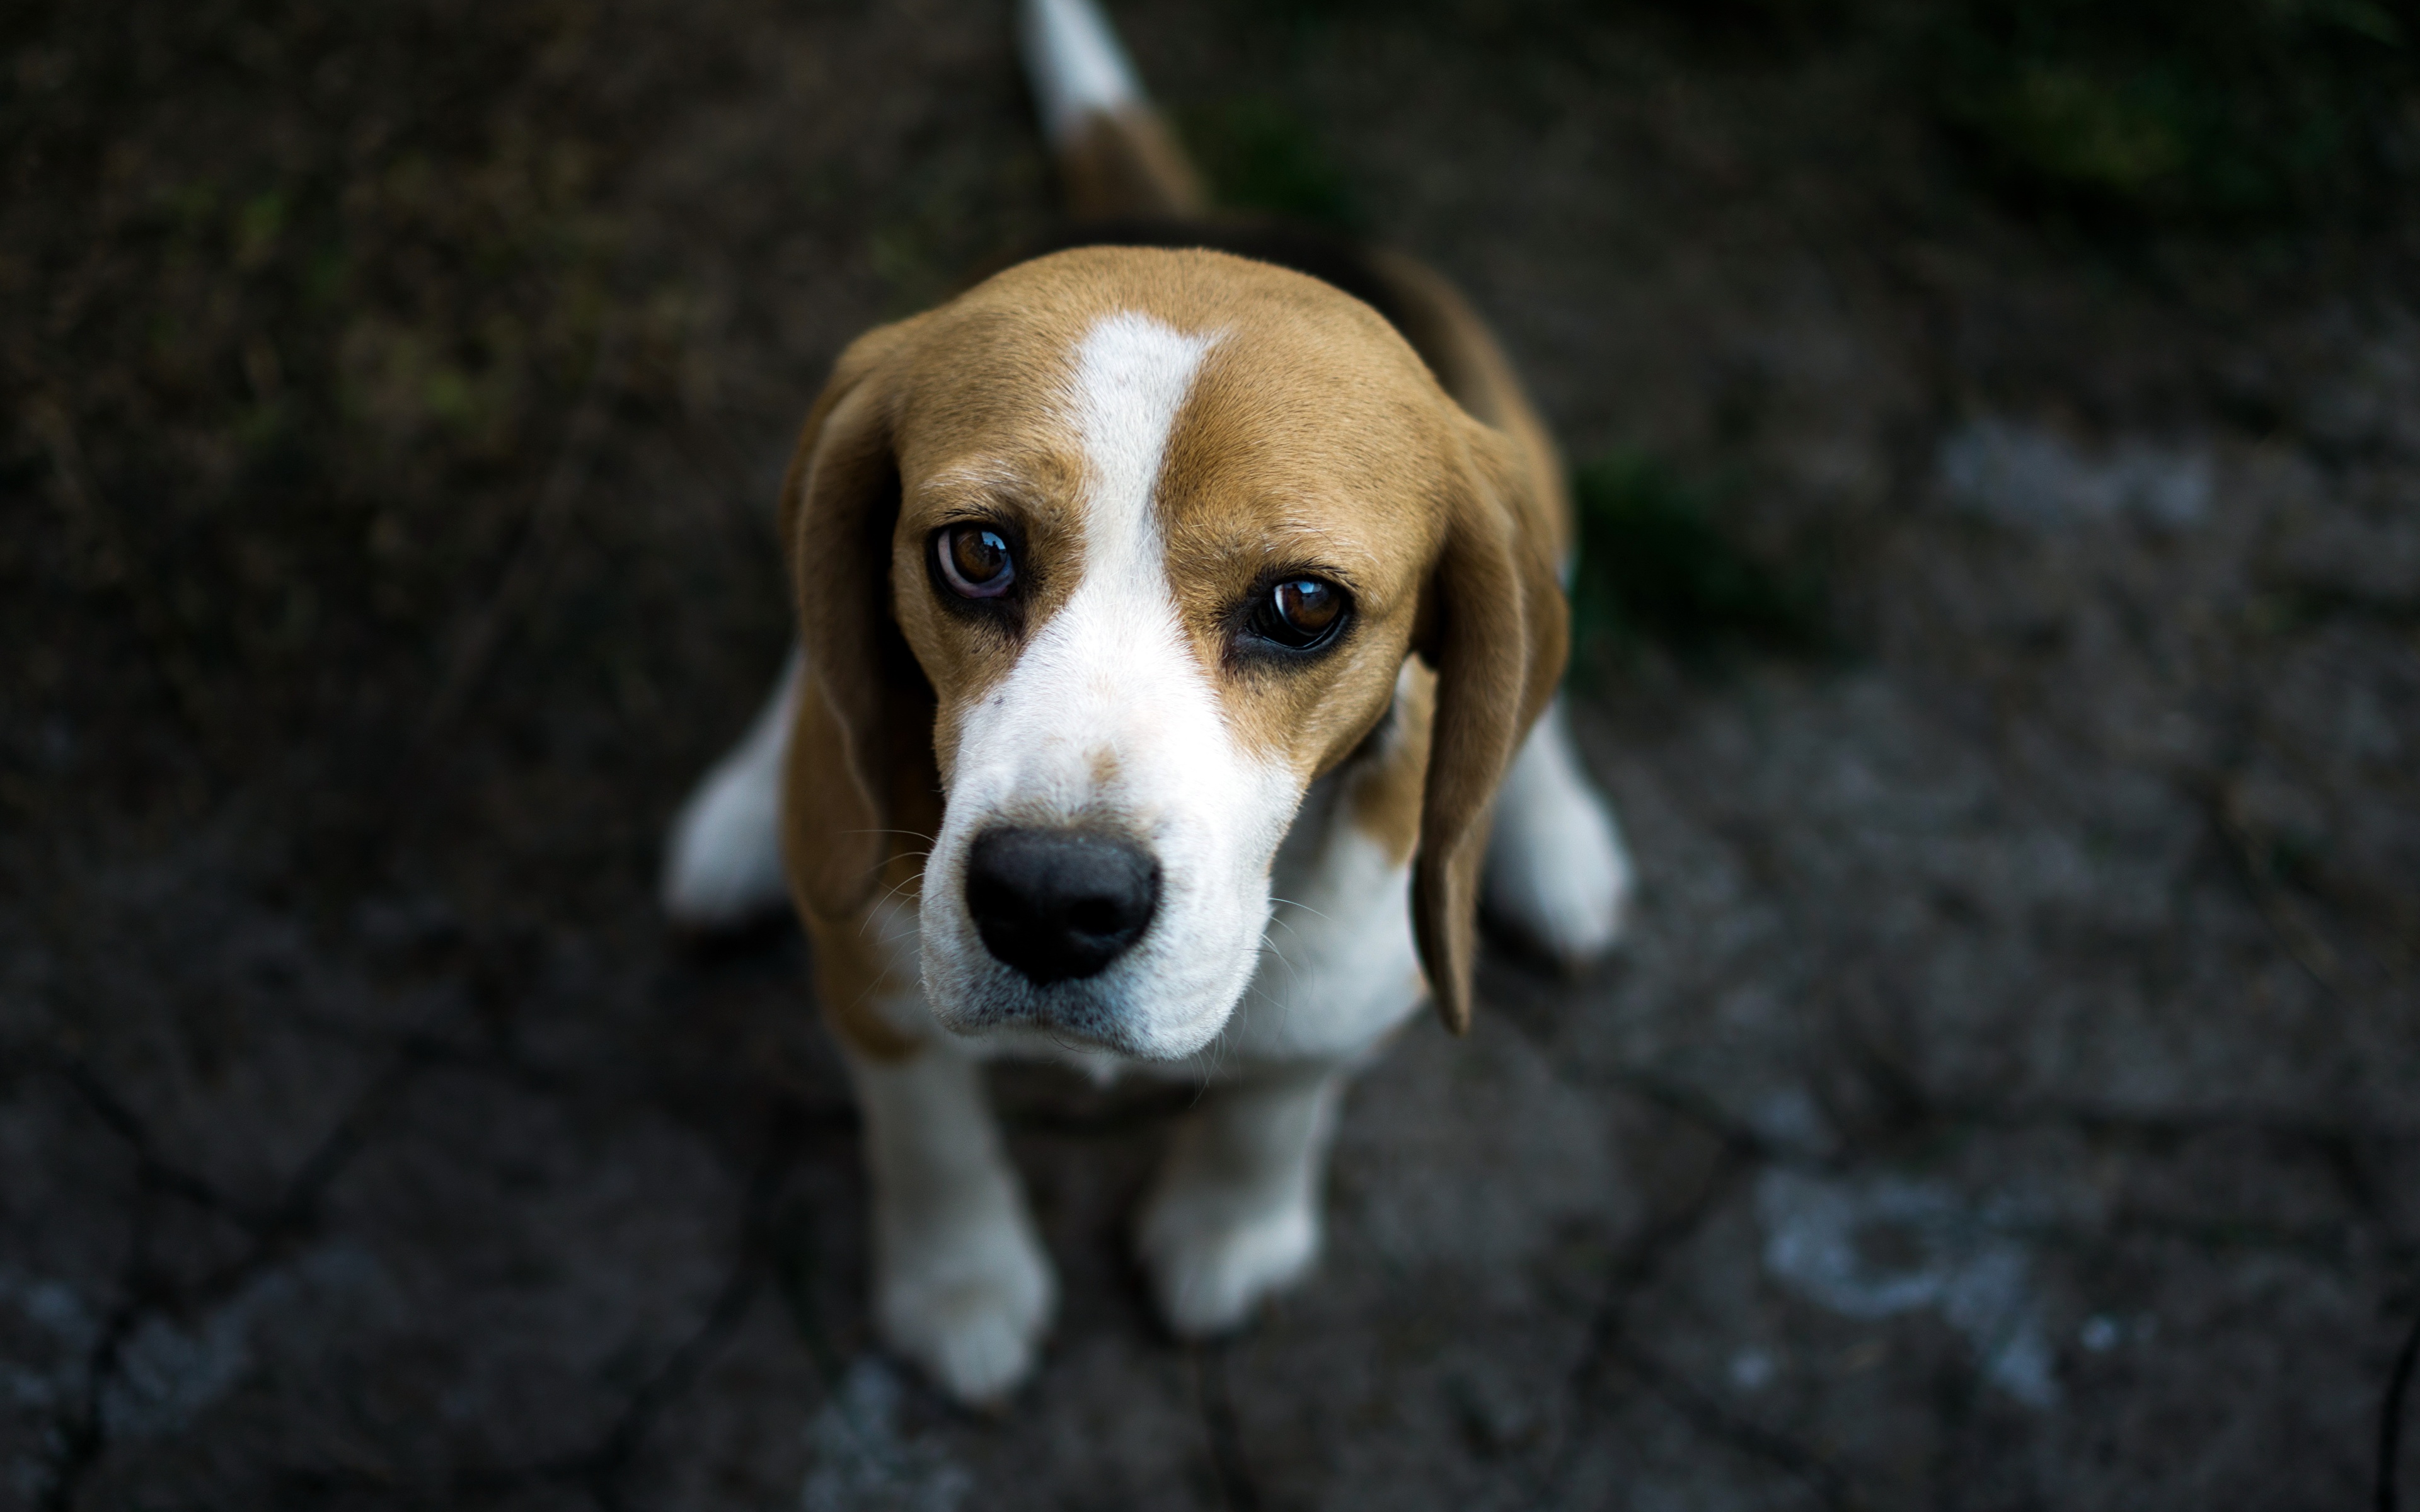 Papeis de parede 3840x2400 Cão Beagle Ver Triste Animalia baixar imagens